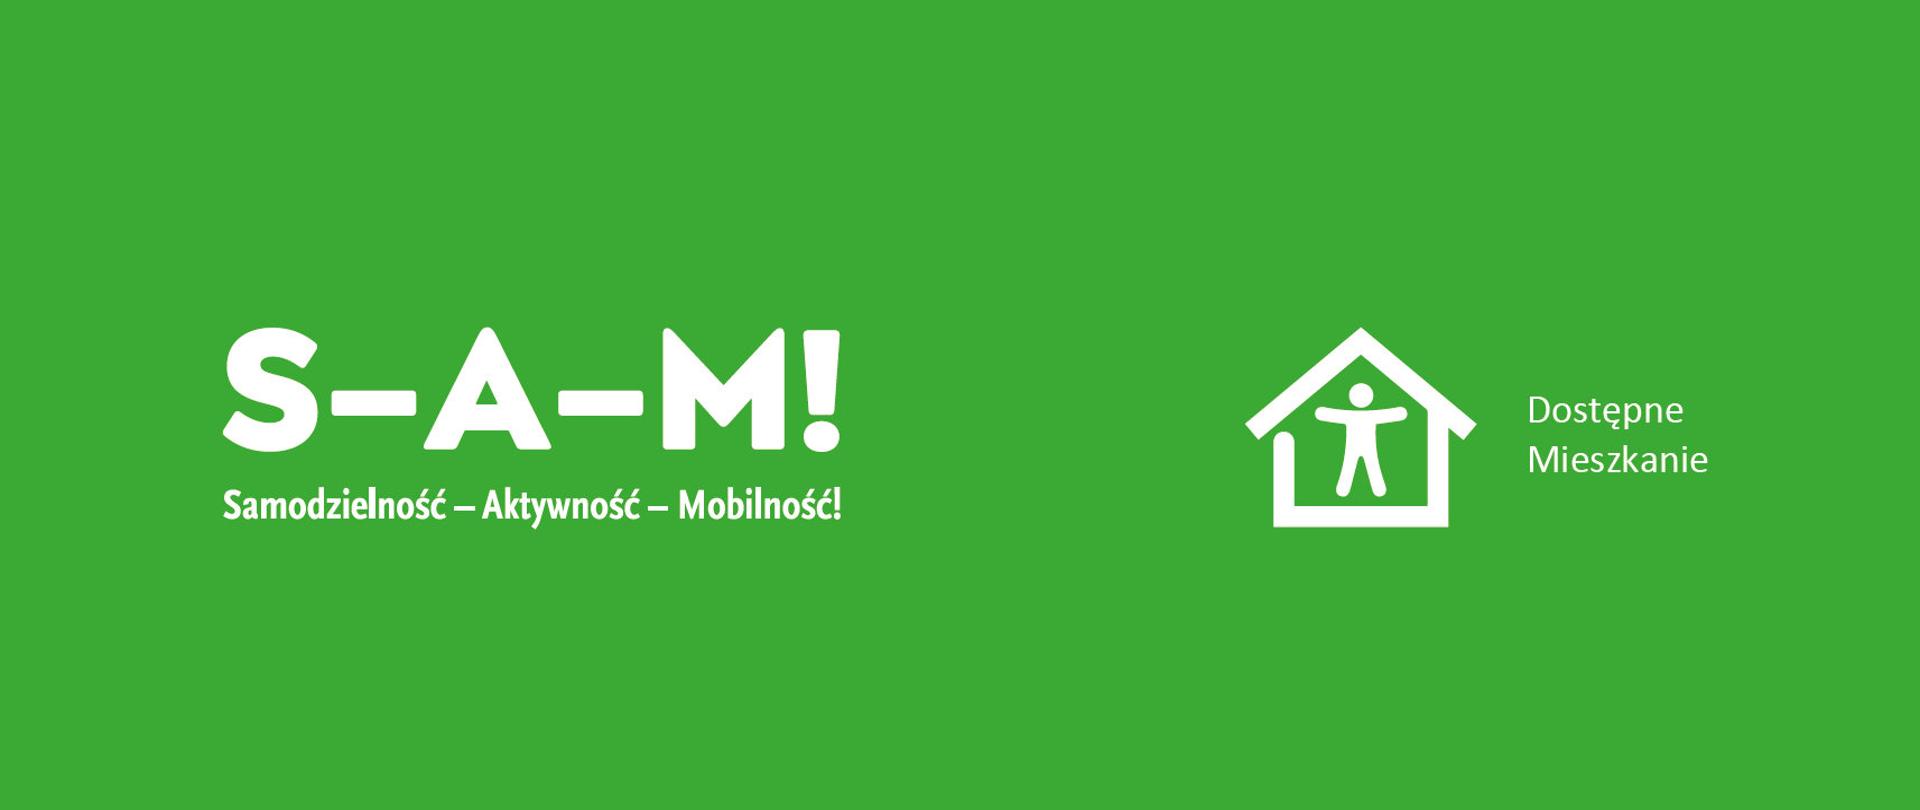 Baner - na zielonym tle biały napis Samodzielność-Aktywność-Mobilność!, Dostępne Mieszkanie, symbol domu i człowieka w nim